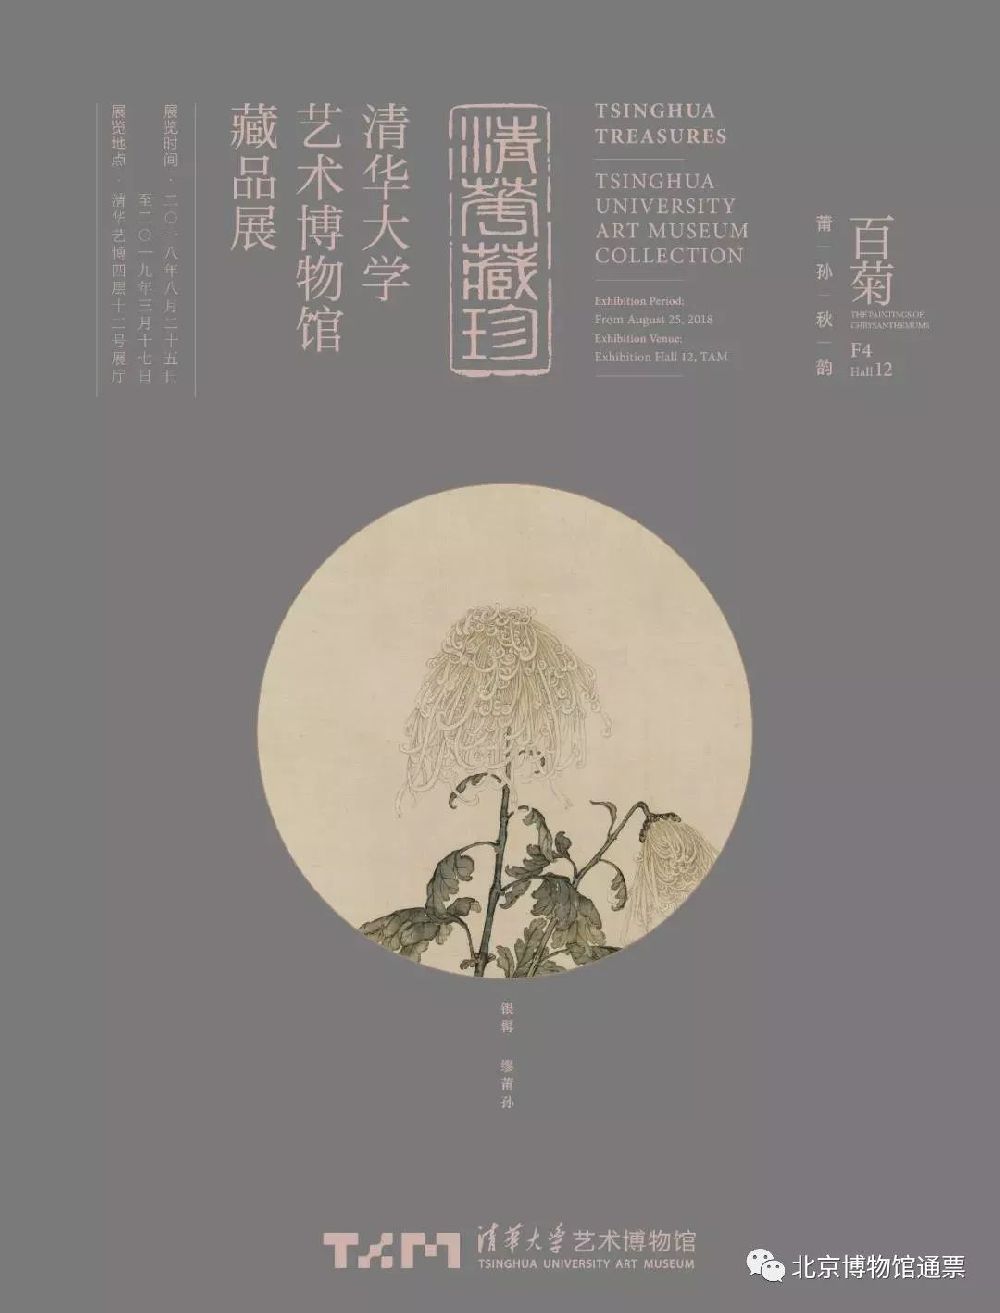 2019年2月北京免费展览演出活动全攻略